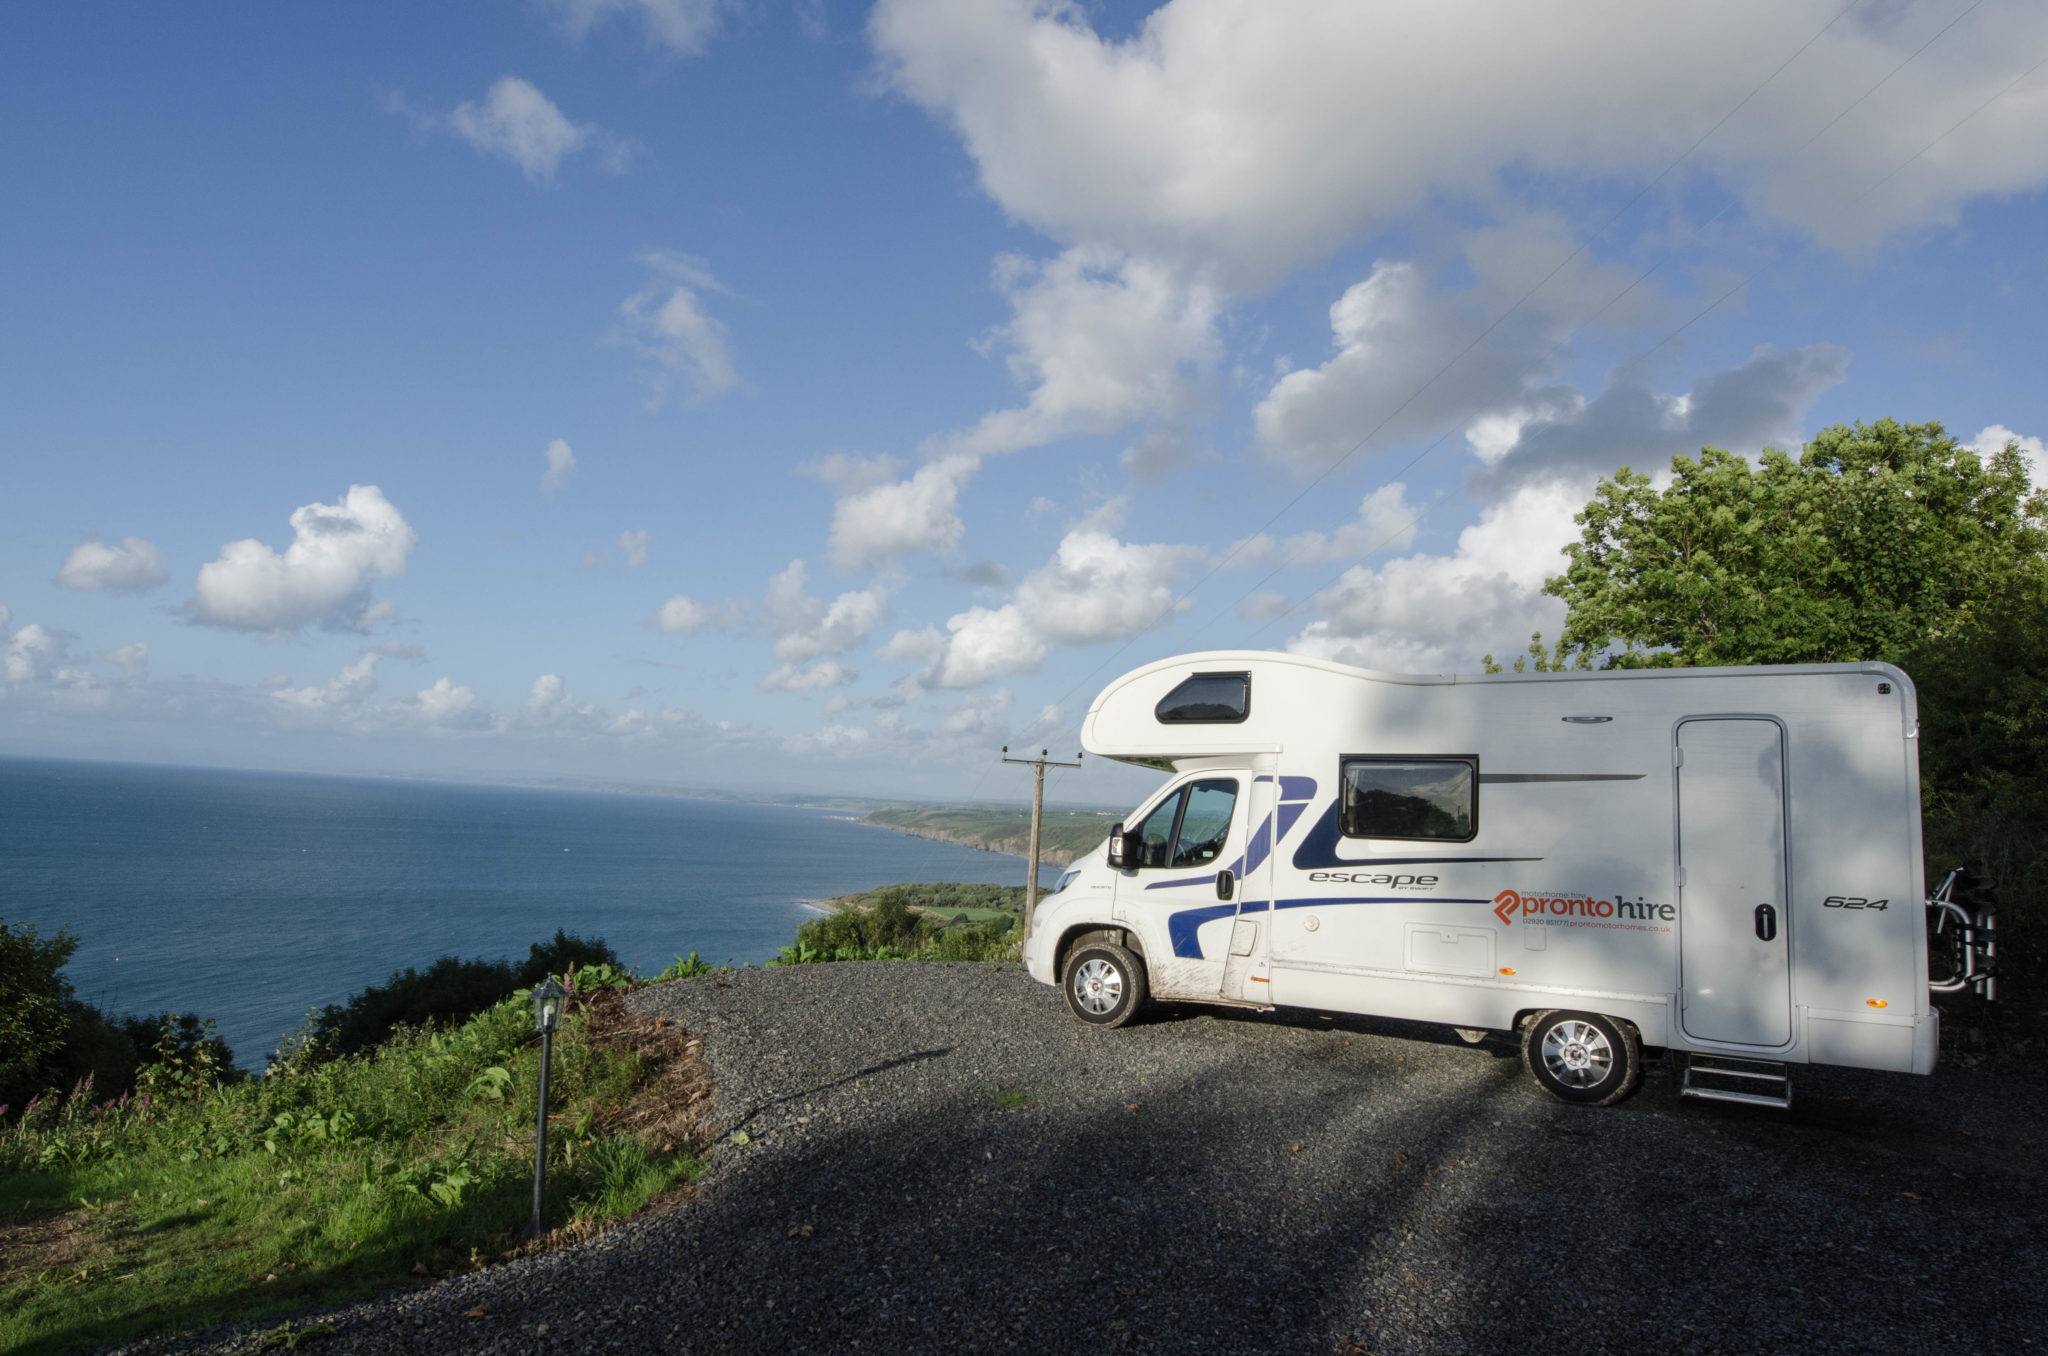 Camping Wales: So wird der Wales Urlaub unvergesslich